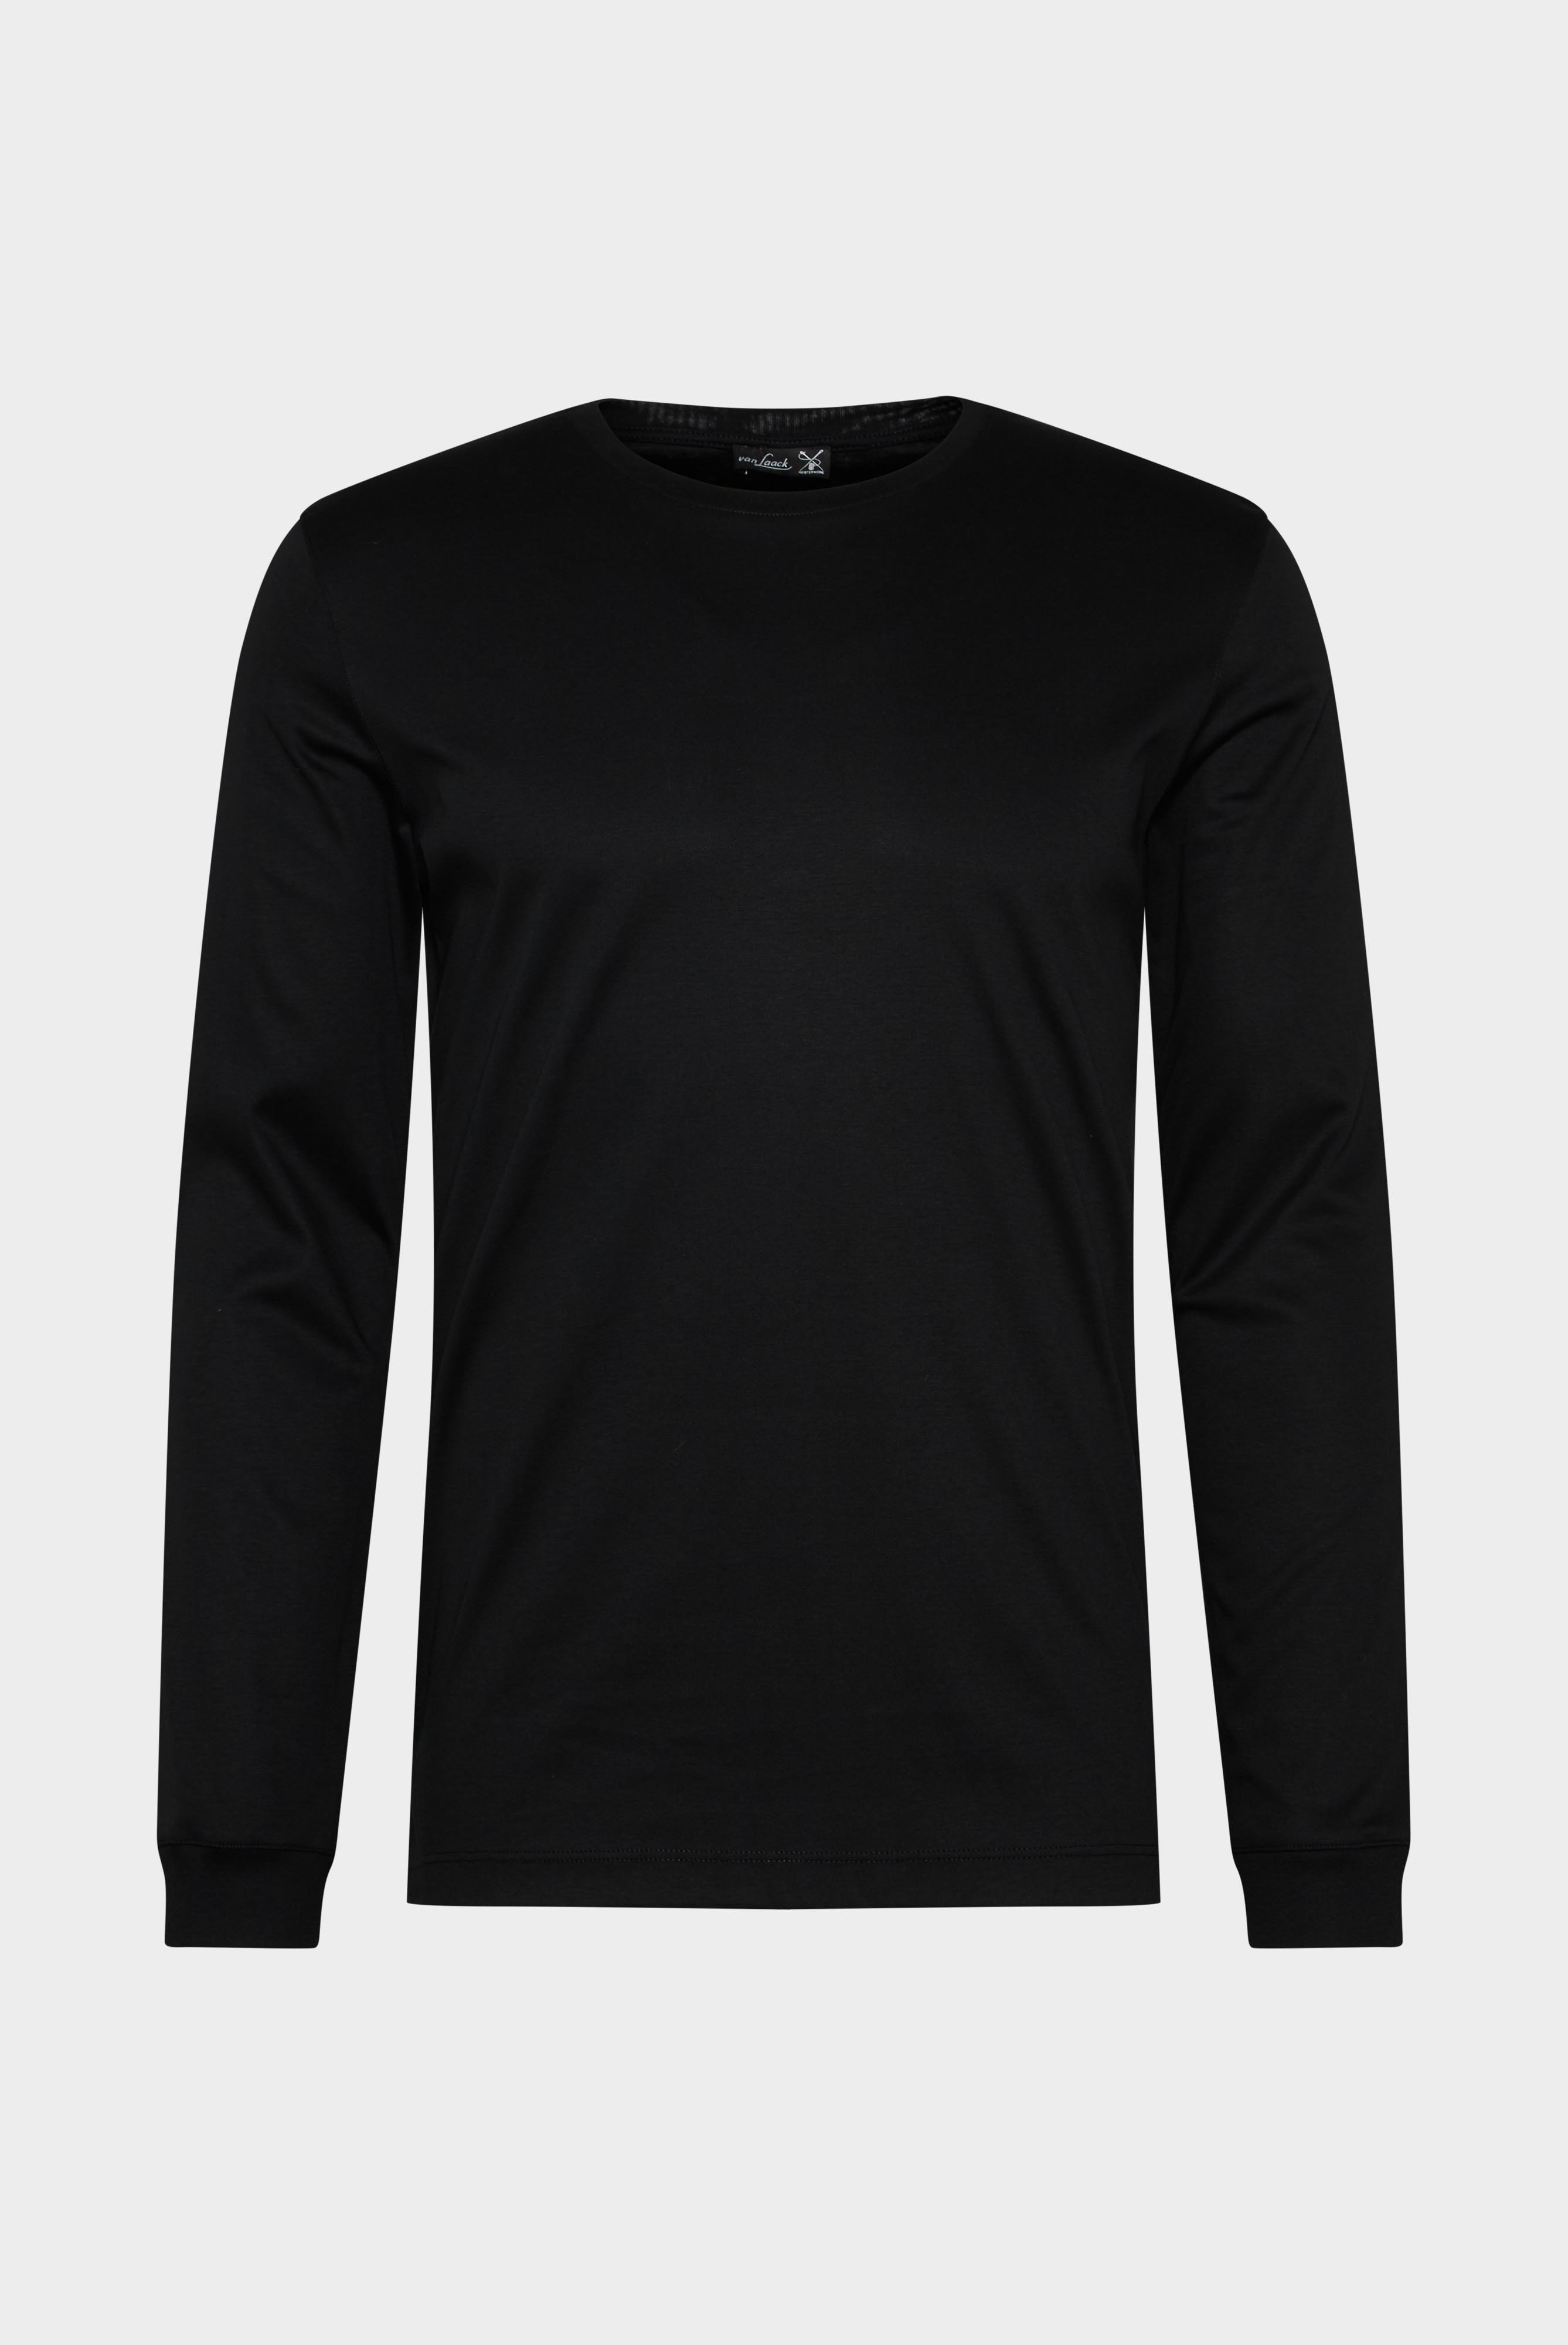 T-Shirts+Longsleeve Swiss Cotton Jersey Crew Neck T-Shirt+20.1718.UX.180031.099.XL